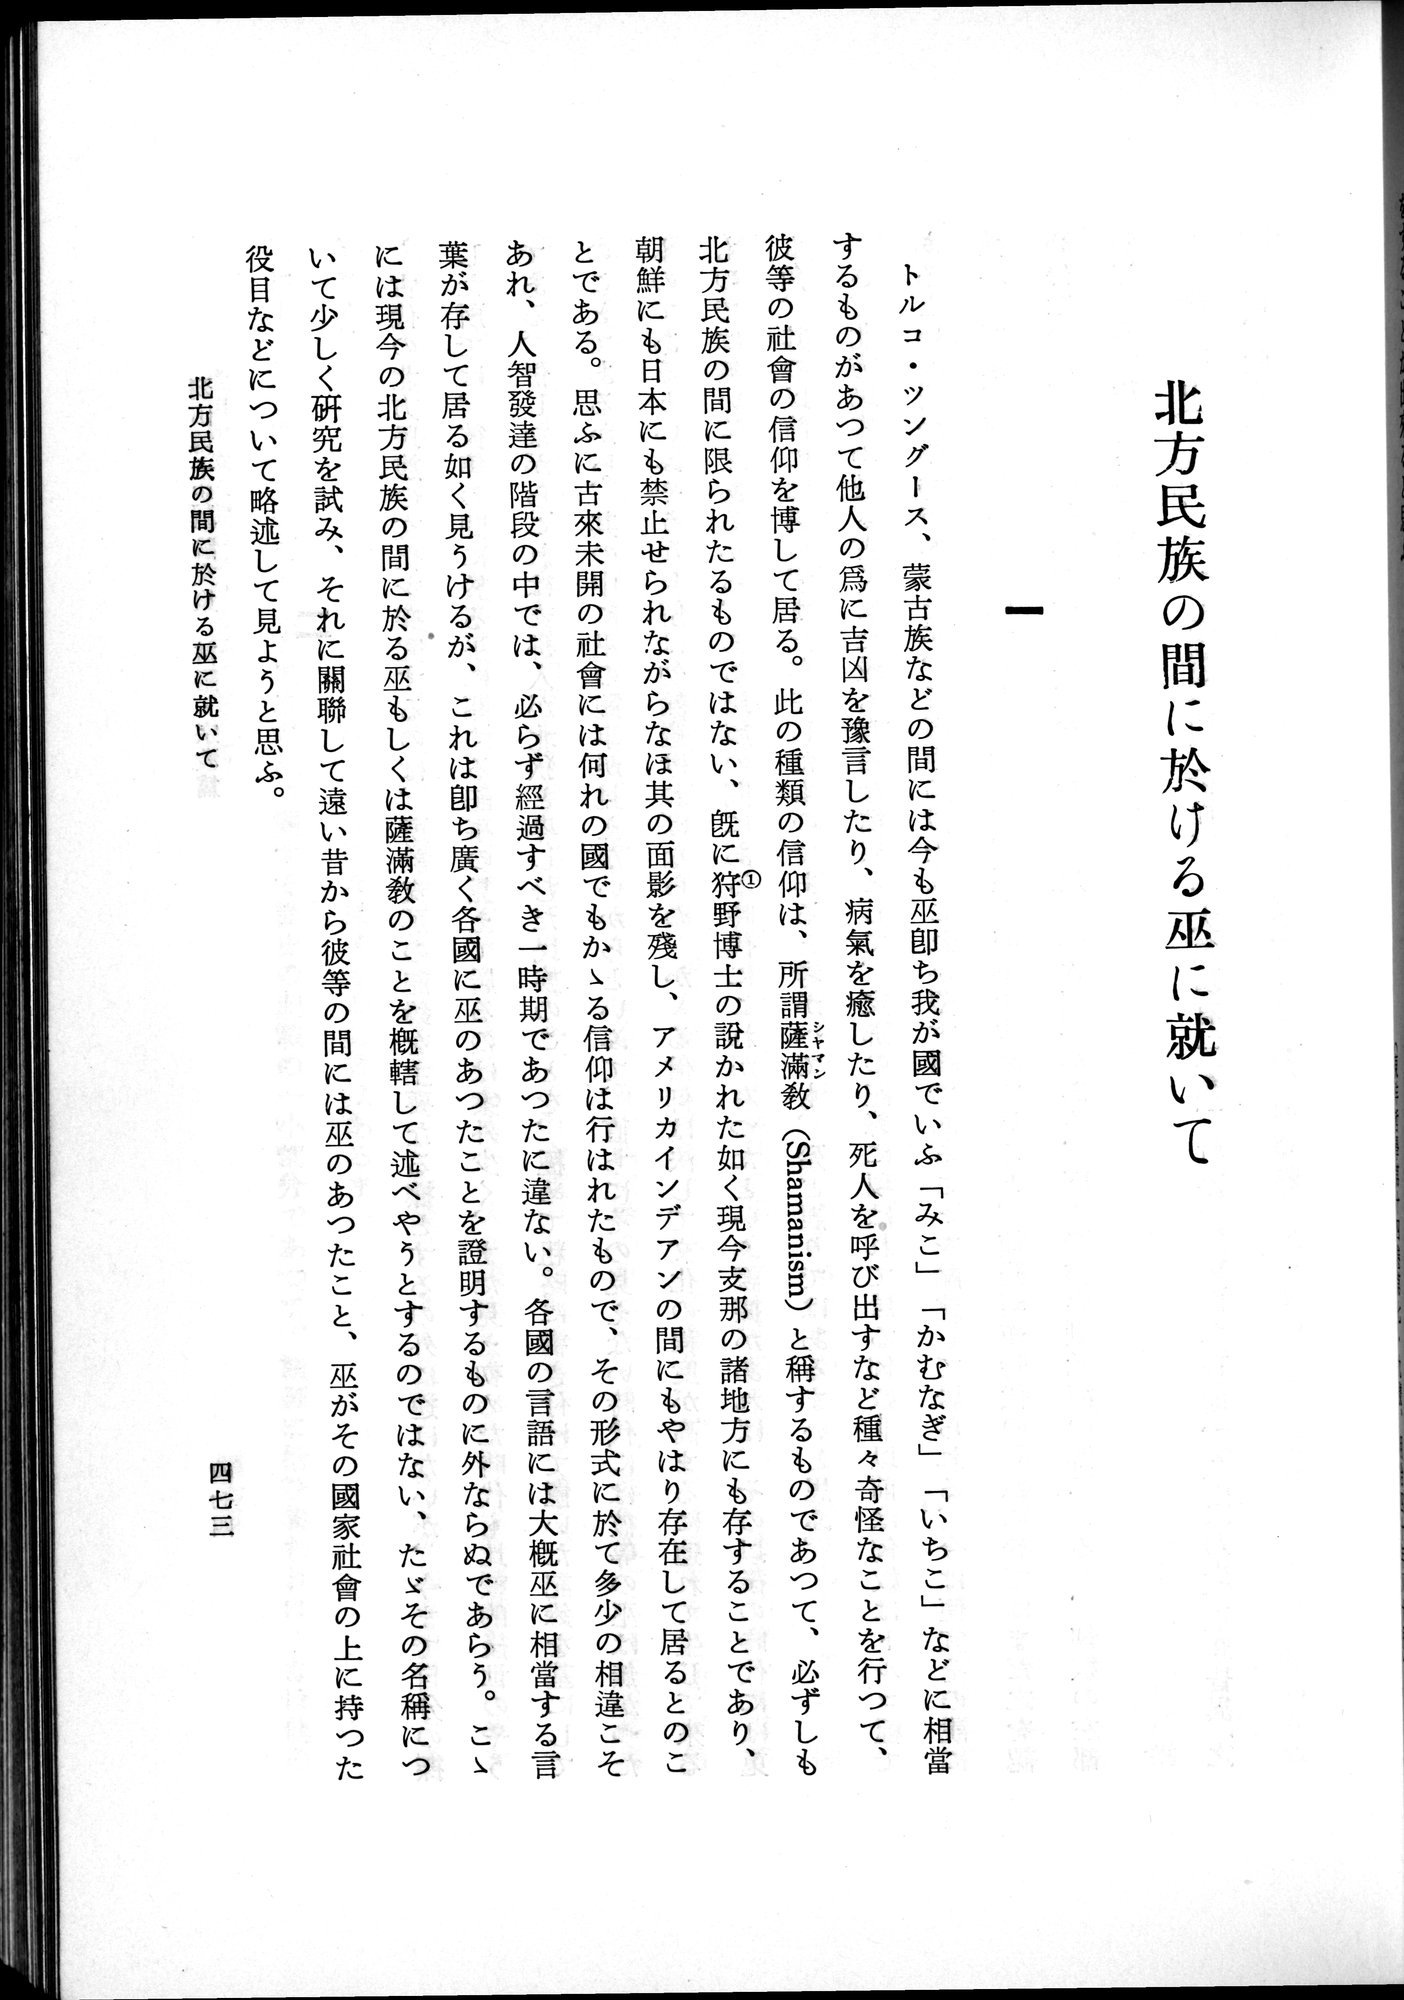 羽田博士史学論文集 : vol.2 / Page 535 (Grayscale High Resolution Image)